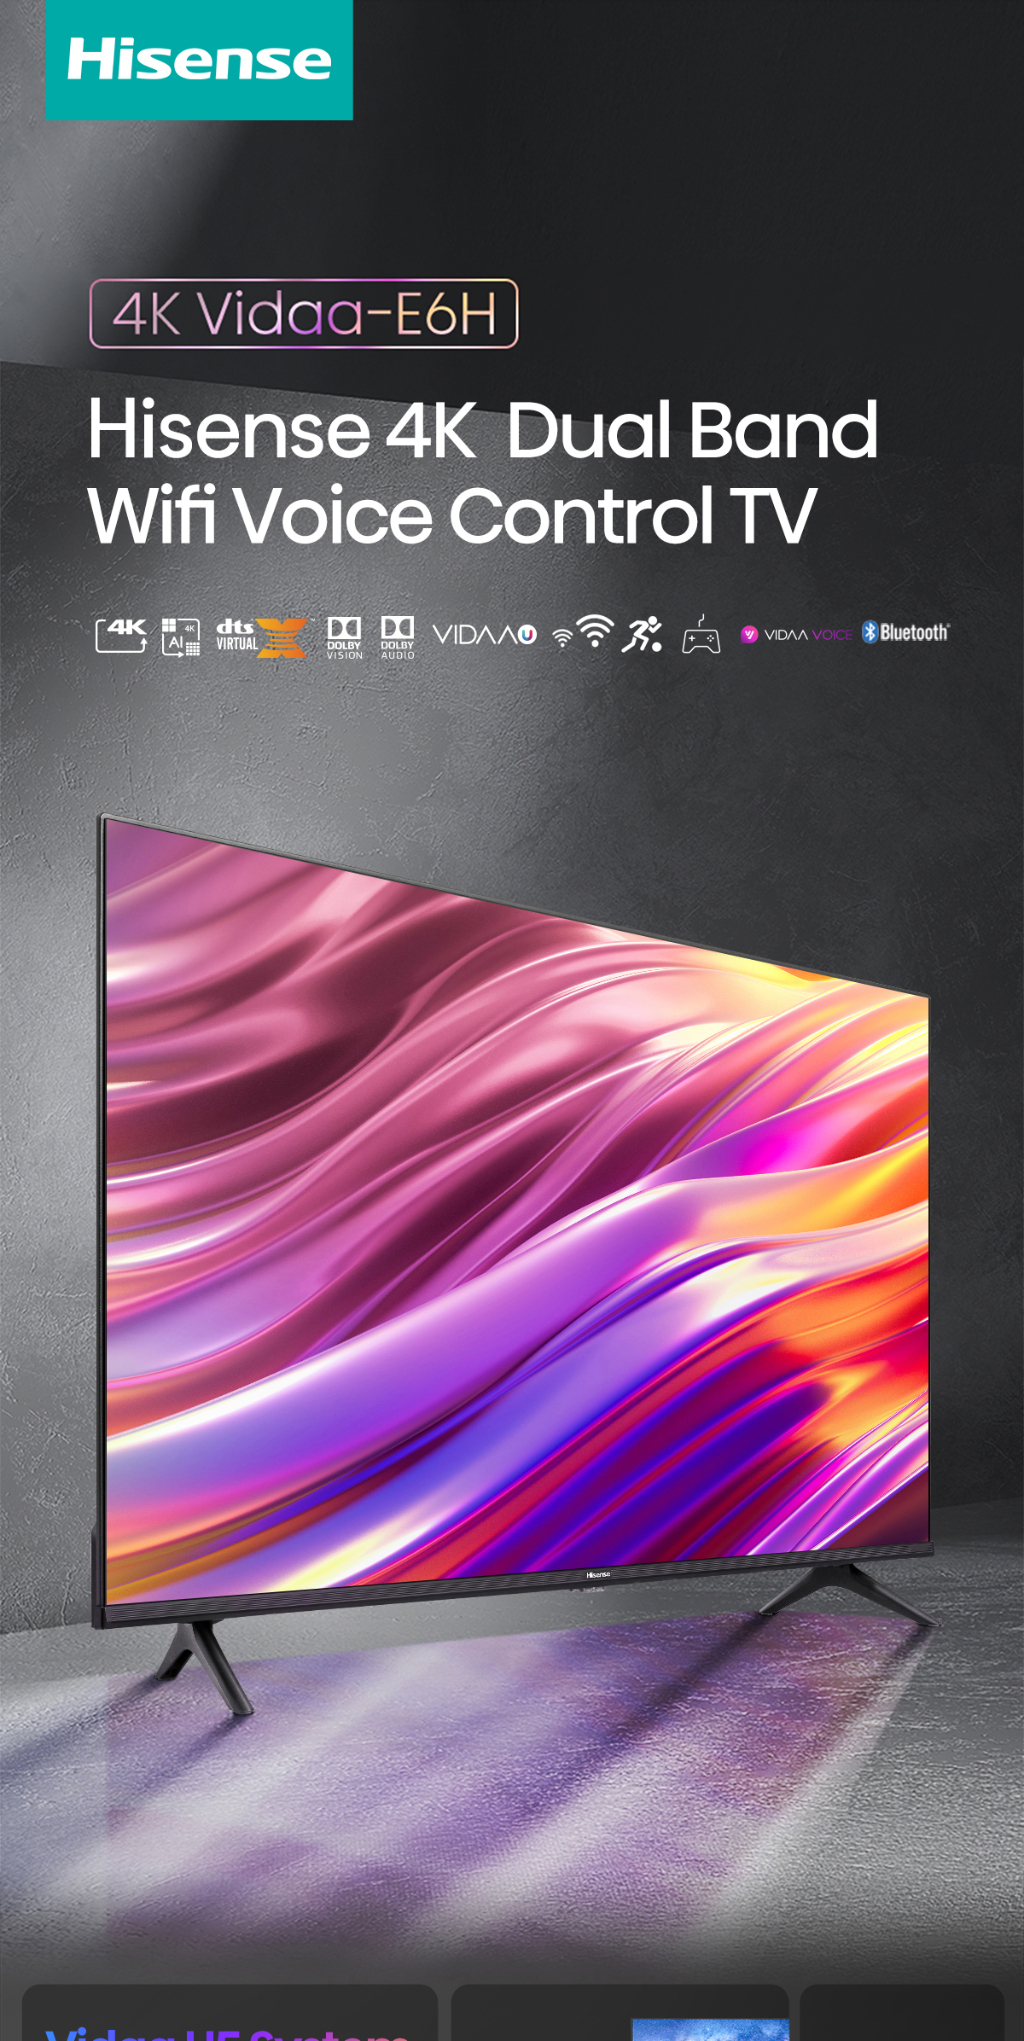 รูปภาพเพิ่มเติมเกี่ยวกับ Hisense TV ทีวี 55 นิ้ว 4K Ultra HD Smart TV รุ่น 55E6H VIDAA U5 Voice Control Dolby Vision Netflix YouTube 2.4G+5G WIFI Build in /DVB-T2 / USB2.0 / HDMI /AV